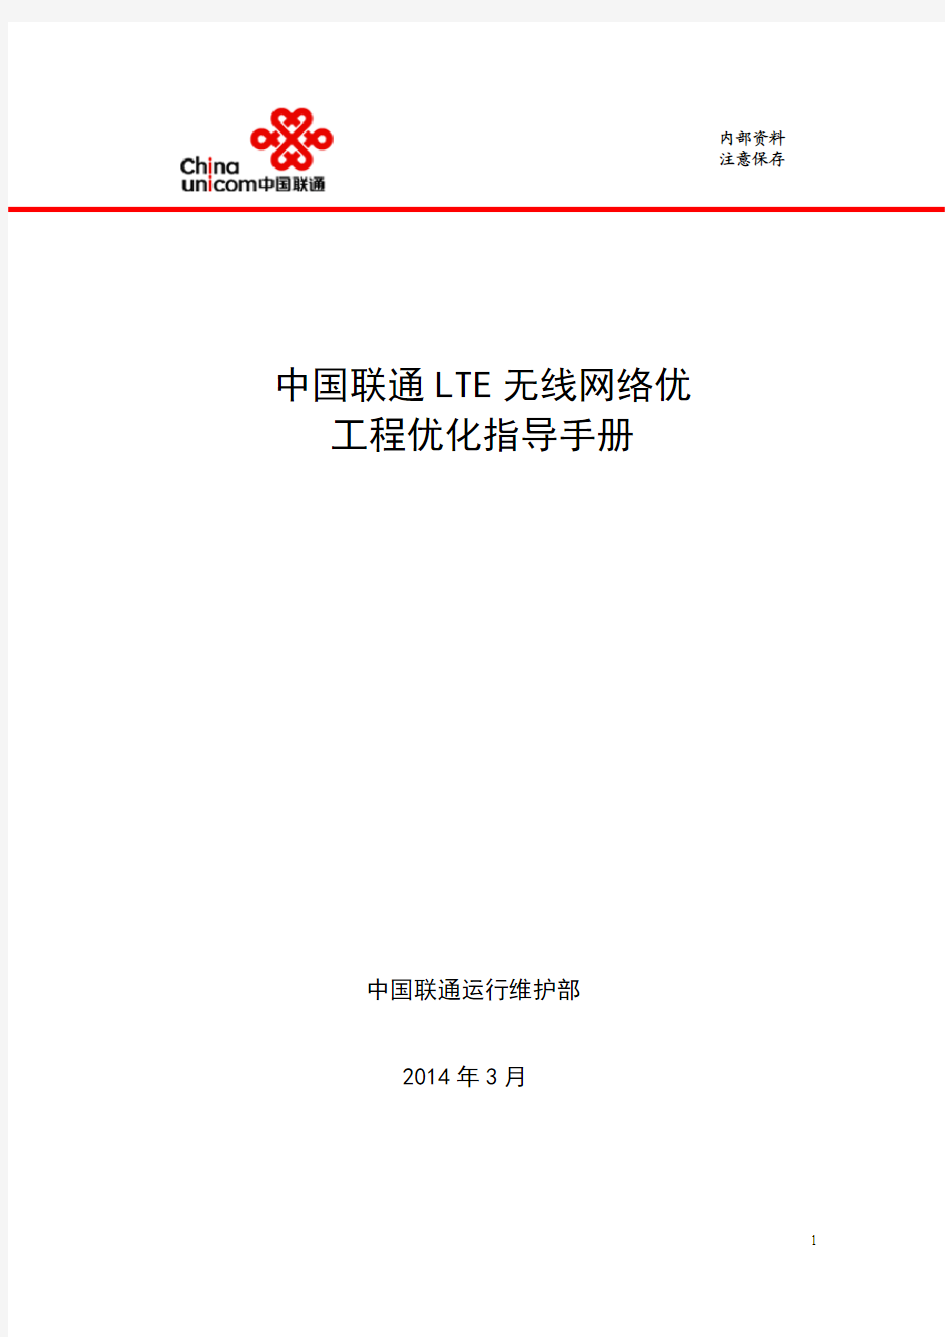 中国联通LTE无线网络优化工程优化指导手册-20140317